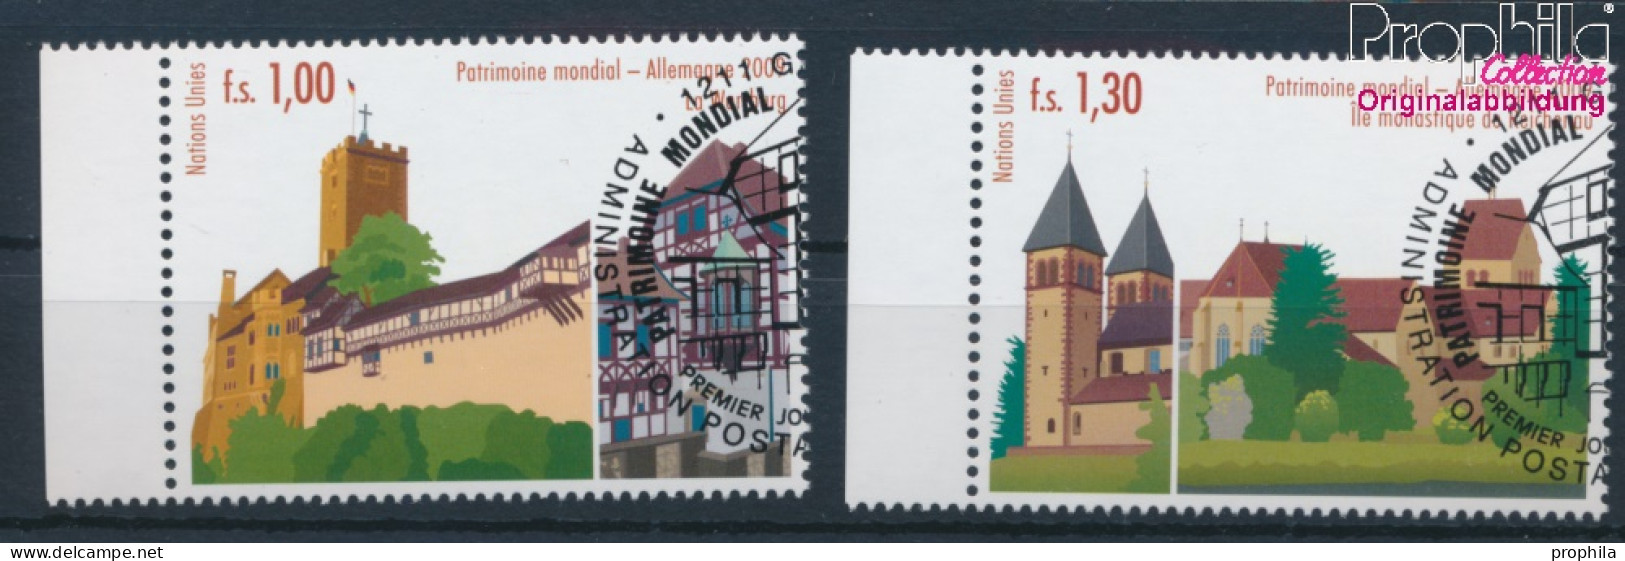 UNO - Genf 644-645 (kompl.Ausg.) Gestempelt 2009 UNESCO Welterbe Deutschland (10311051 - Used Stamps